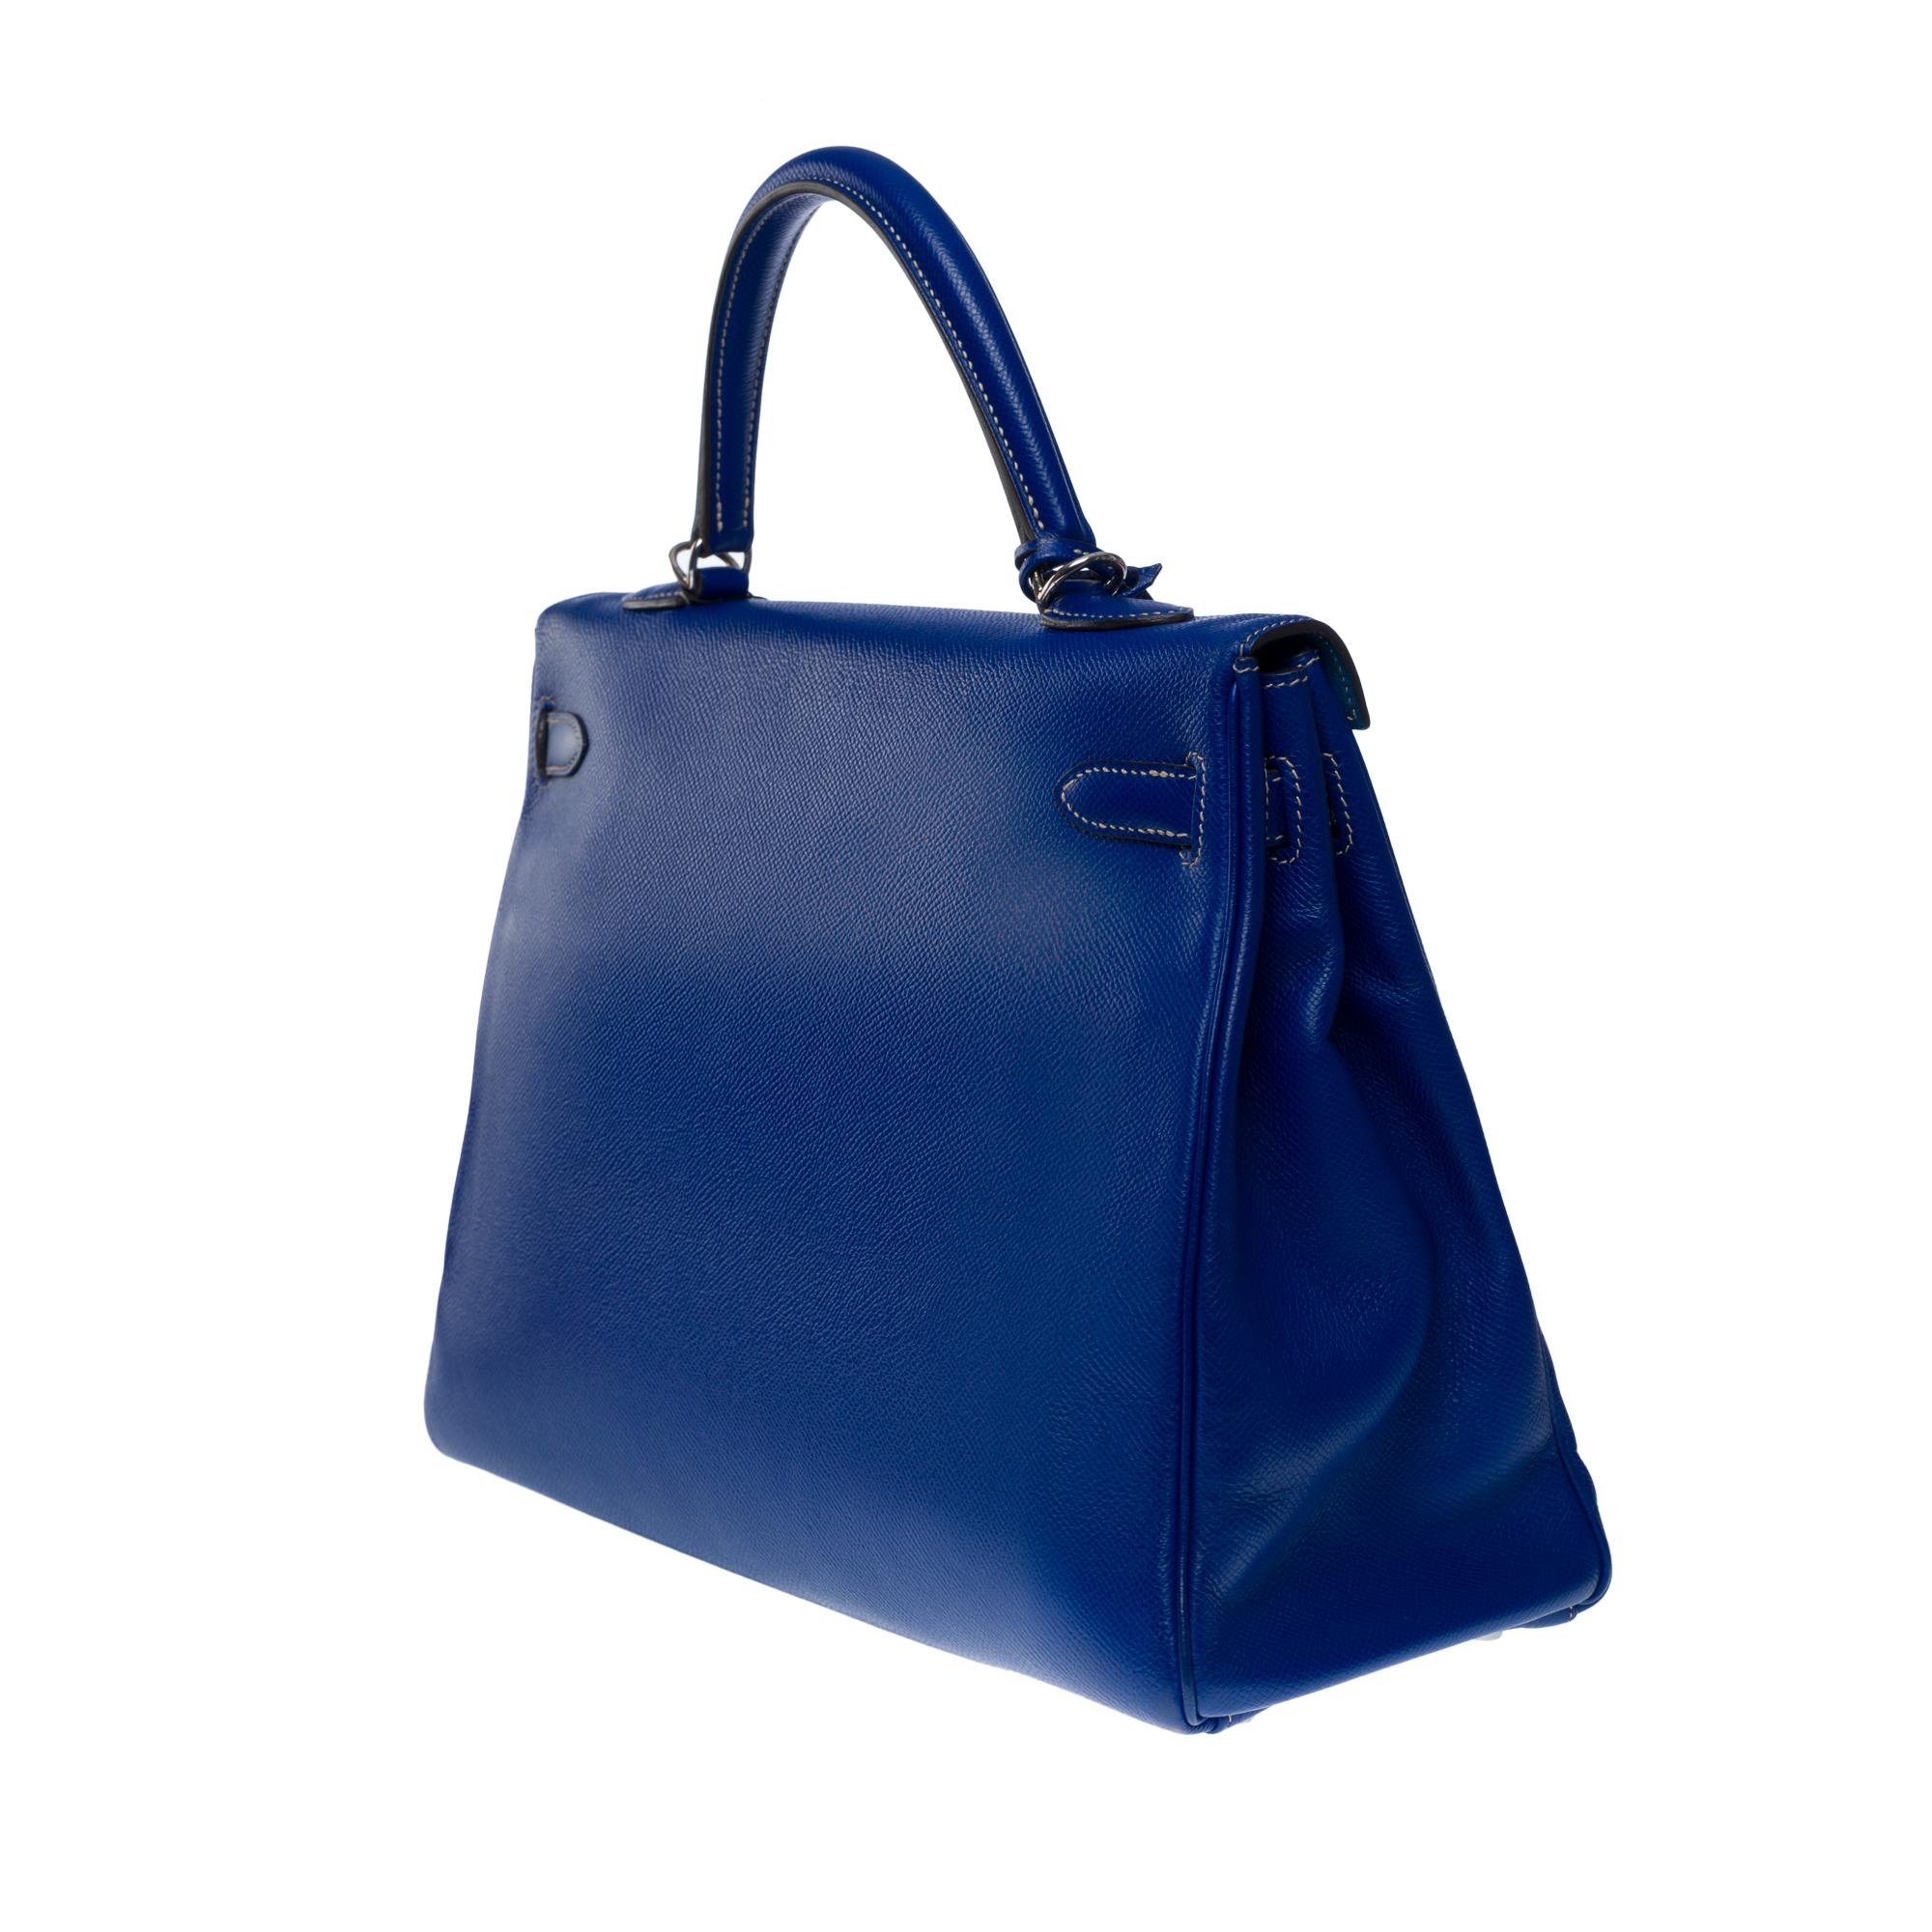 Candy Edition Hermès Kelly 35 retourne handbag strap in Blue Epsom leather, SHW 1